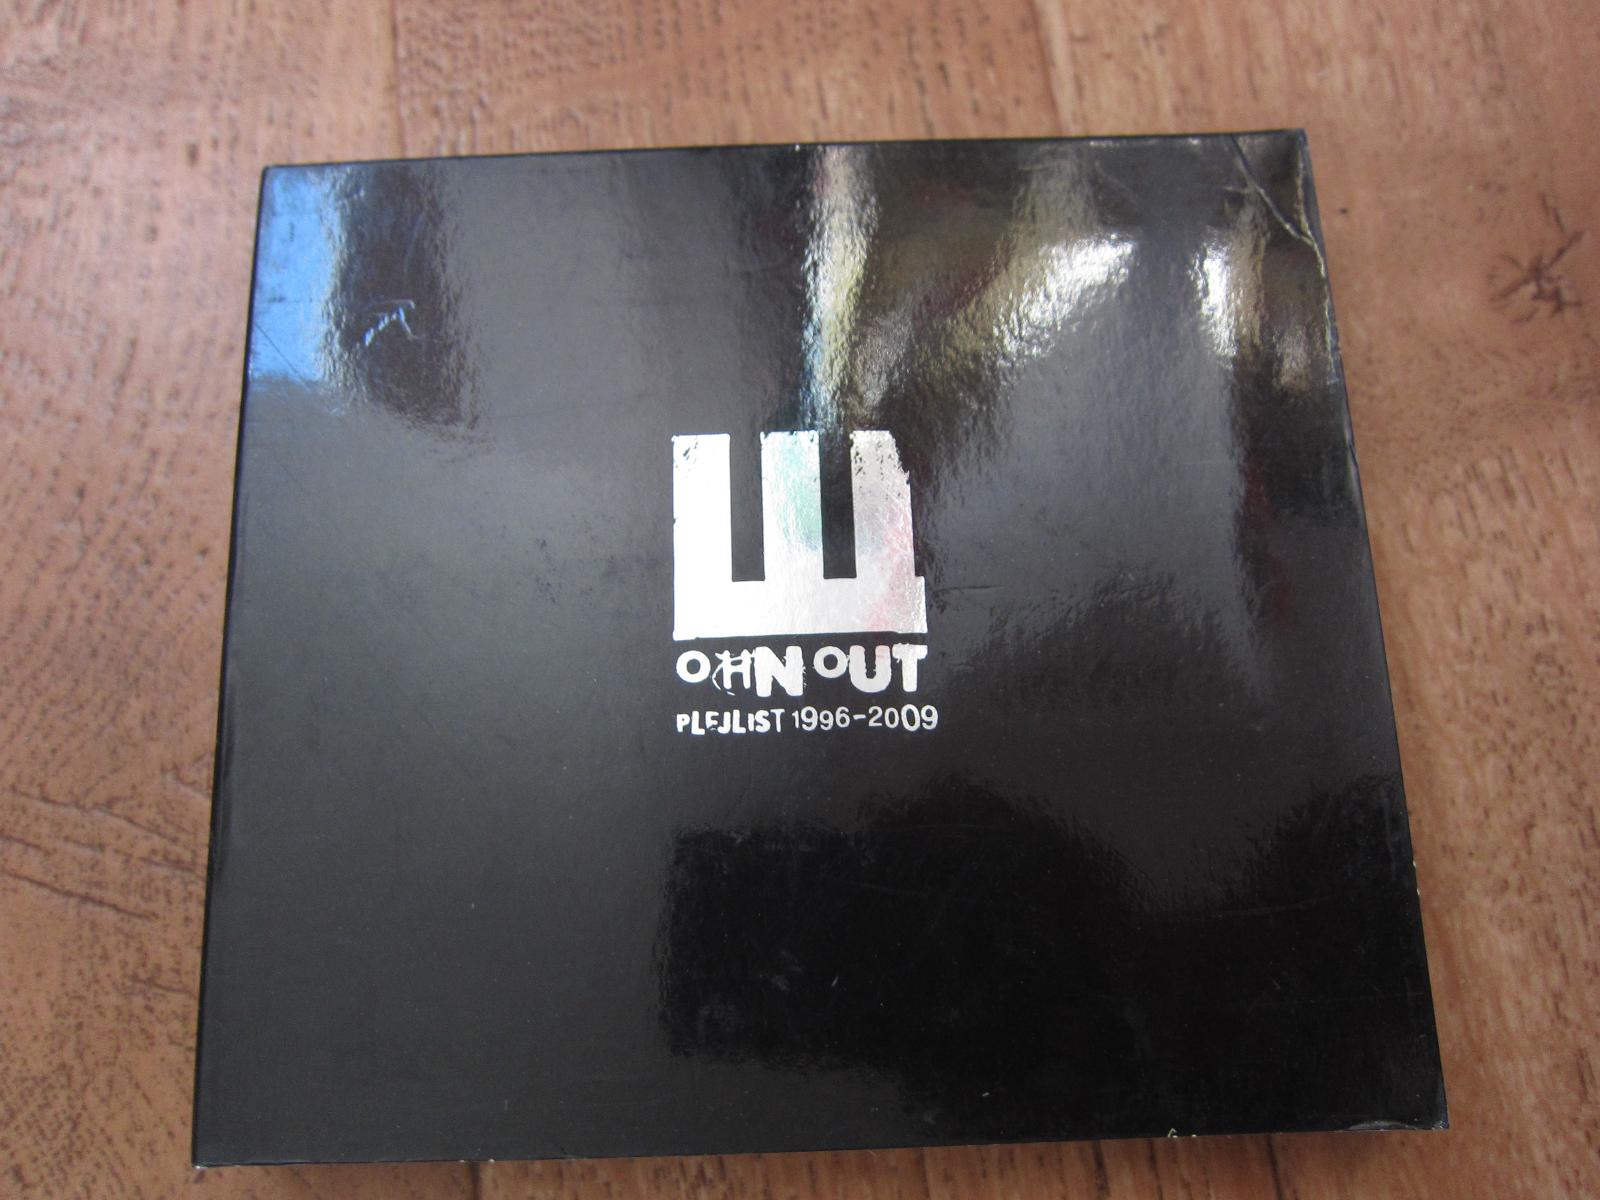 Wohnúť - plejlist 1996 - 2009 (2010 Sony Music) - Hudba na CD